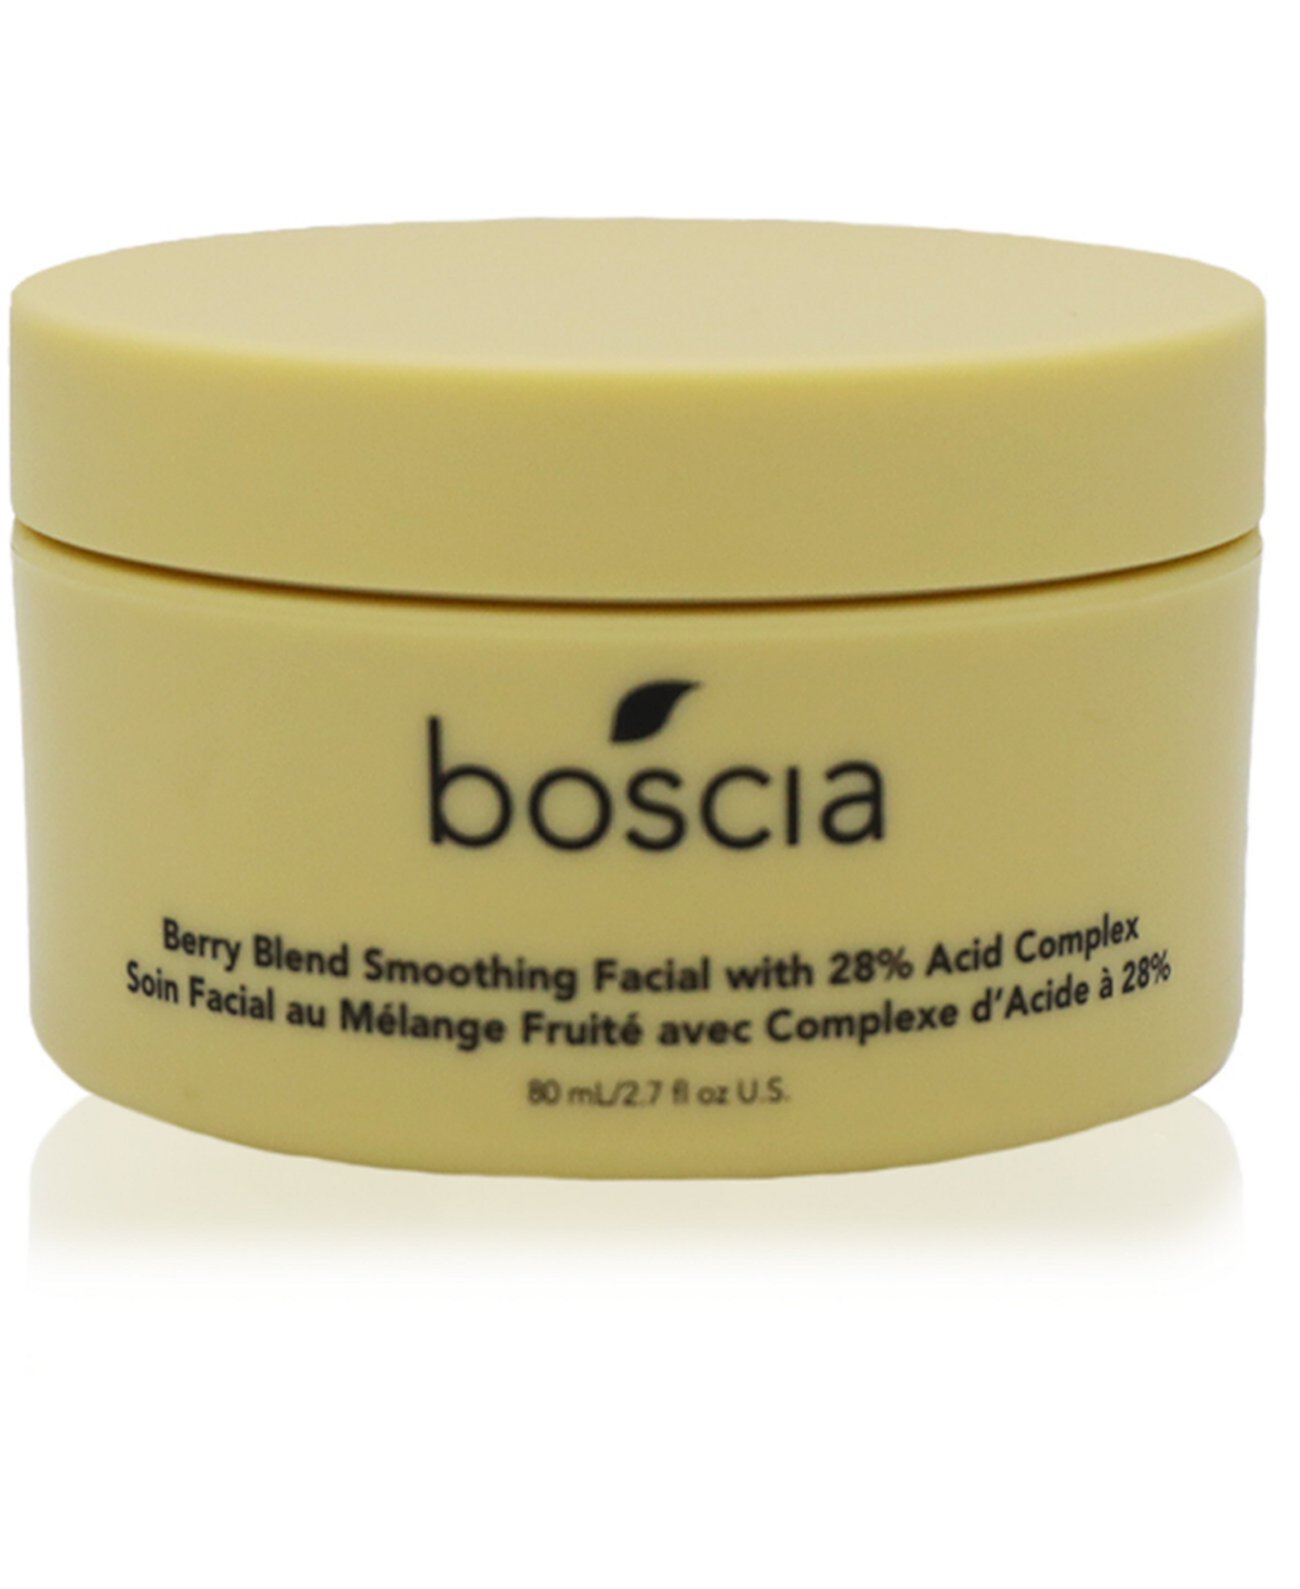 Разглаживающая маска для лица с ягодной смесью и комплексом 28% кислоты Boscia